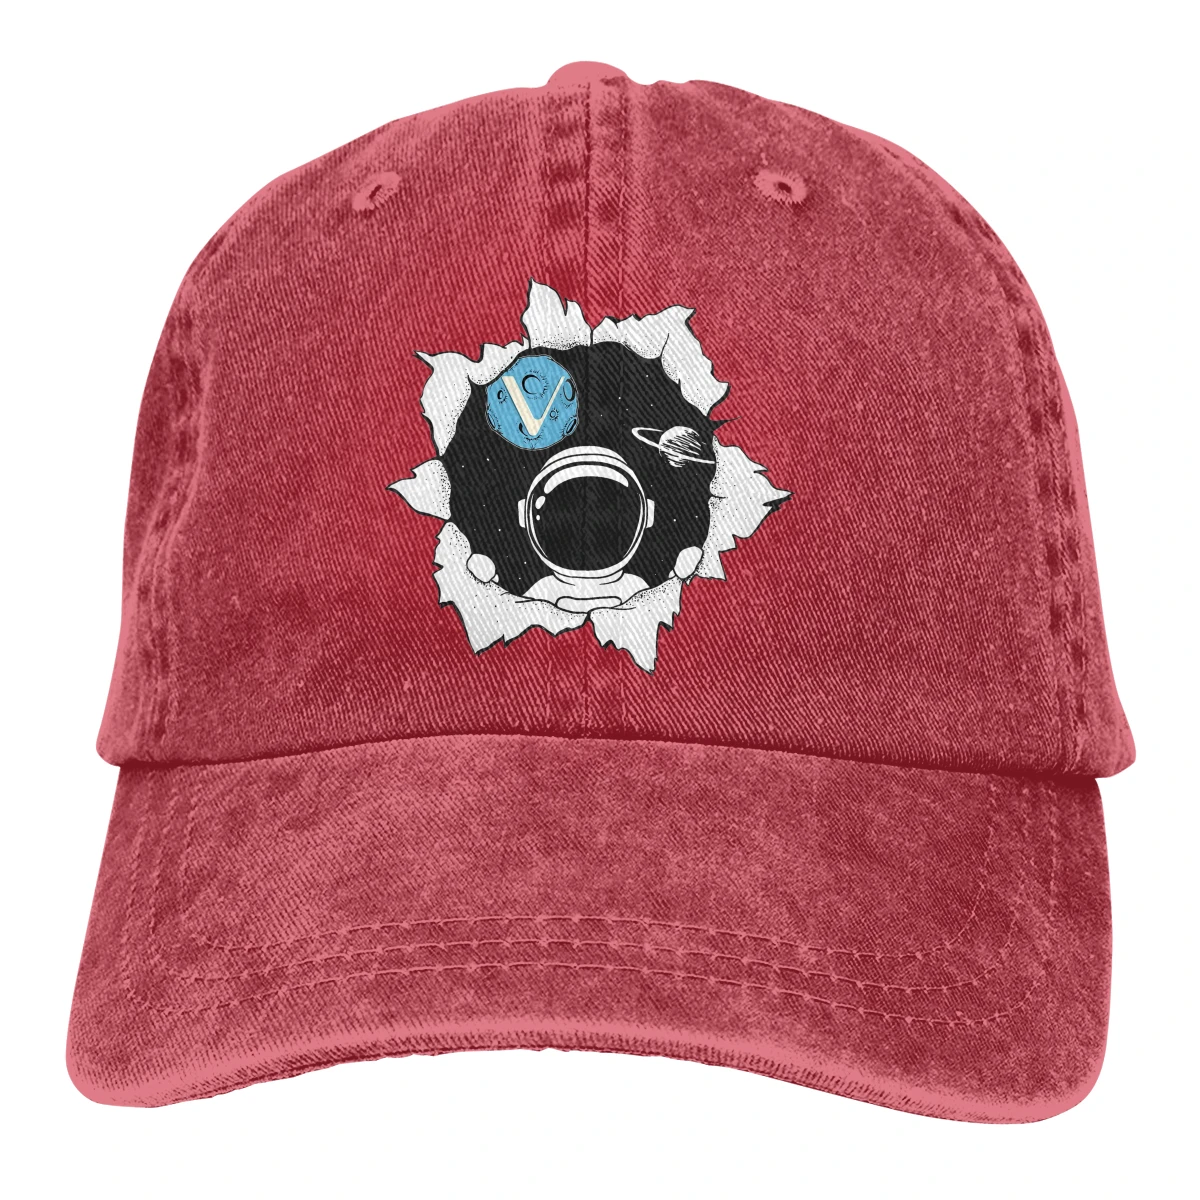 

Бейсболка с копией астронавта туалета Hodl, Мужская кепка VeChain Coin VET для криптовалюты, мужские и женские кепки s цветов, летняя кепка